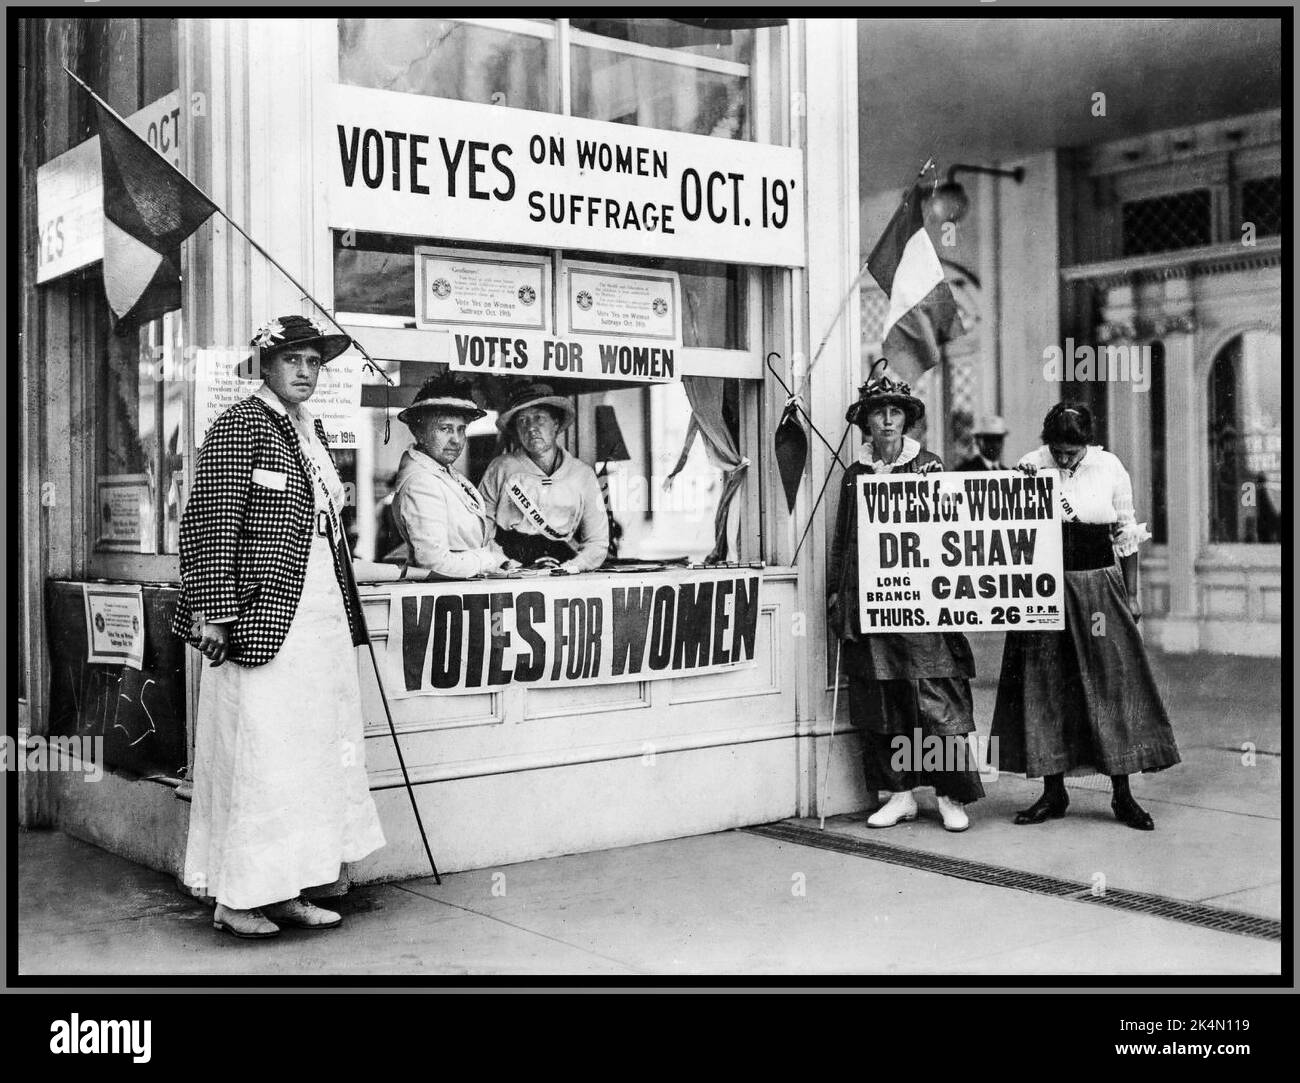 Vote au suffrage pour les femmes 1900s. «Voter Oui» Oct 1919 19th amendement Suffragettes man un stand pour promouvoir le suffrage «votes pour les femmes» Amérique USA Banque D'Images